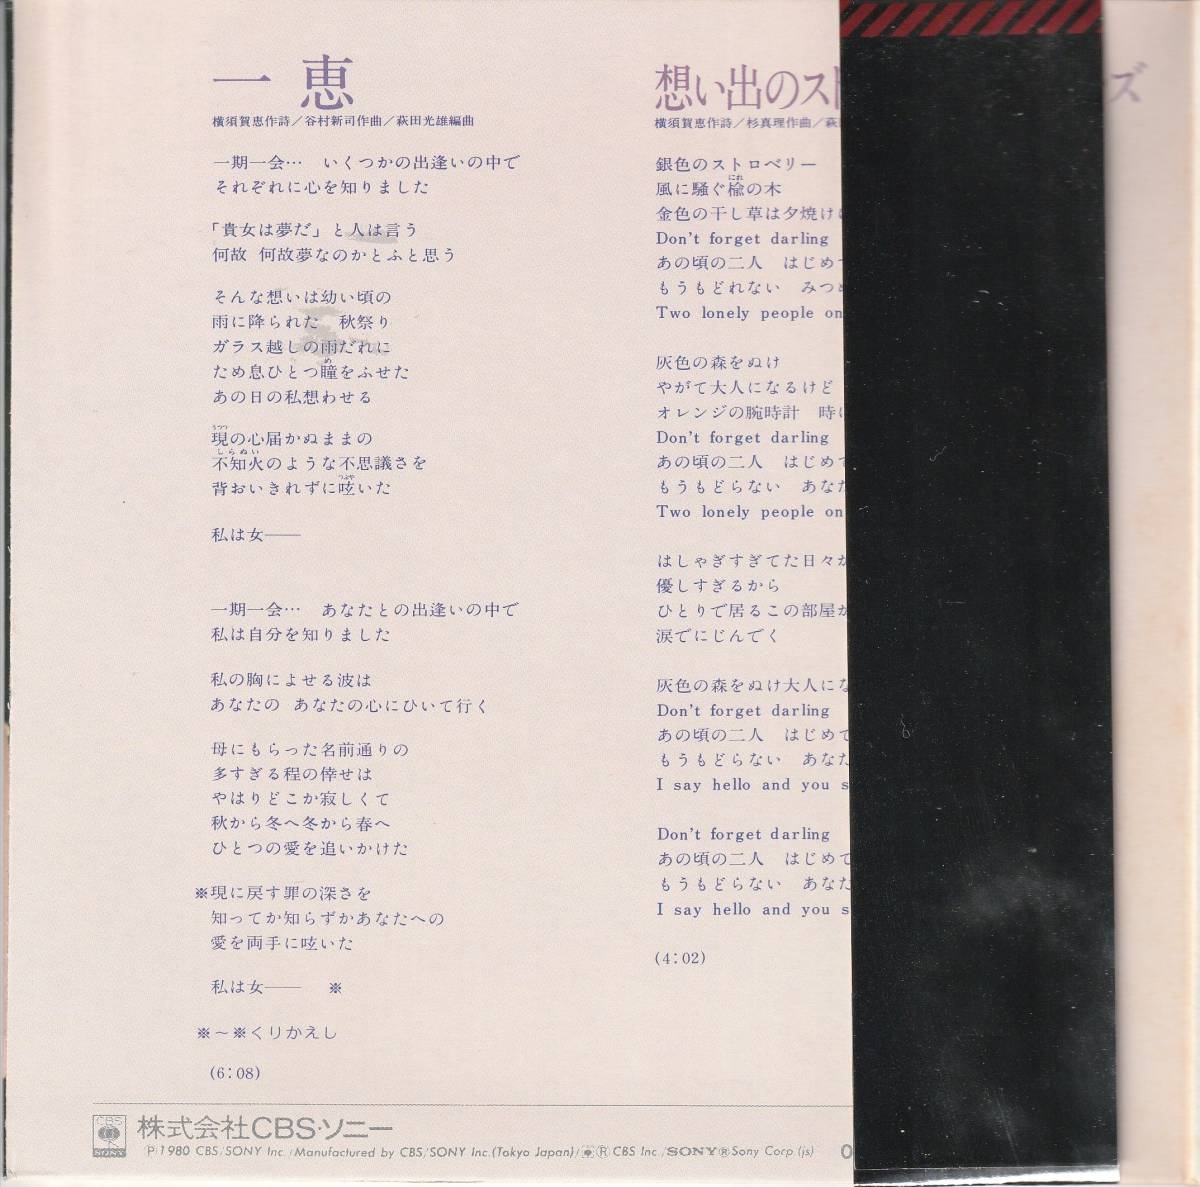 山口百恵 : 一恵 / 想い出のストロベリーフィールズ 国内盤 中古 アナログ EPシングル レコード盤 1980年 09SH 894 M2-KDO-699_画像3